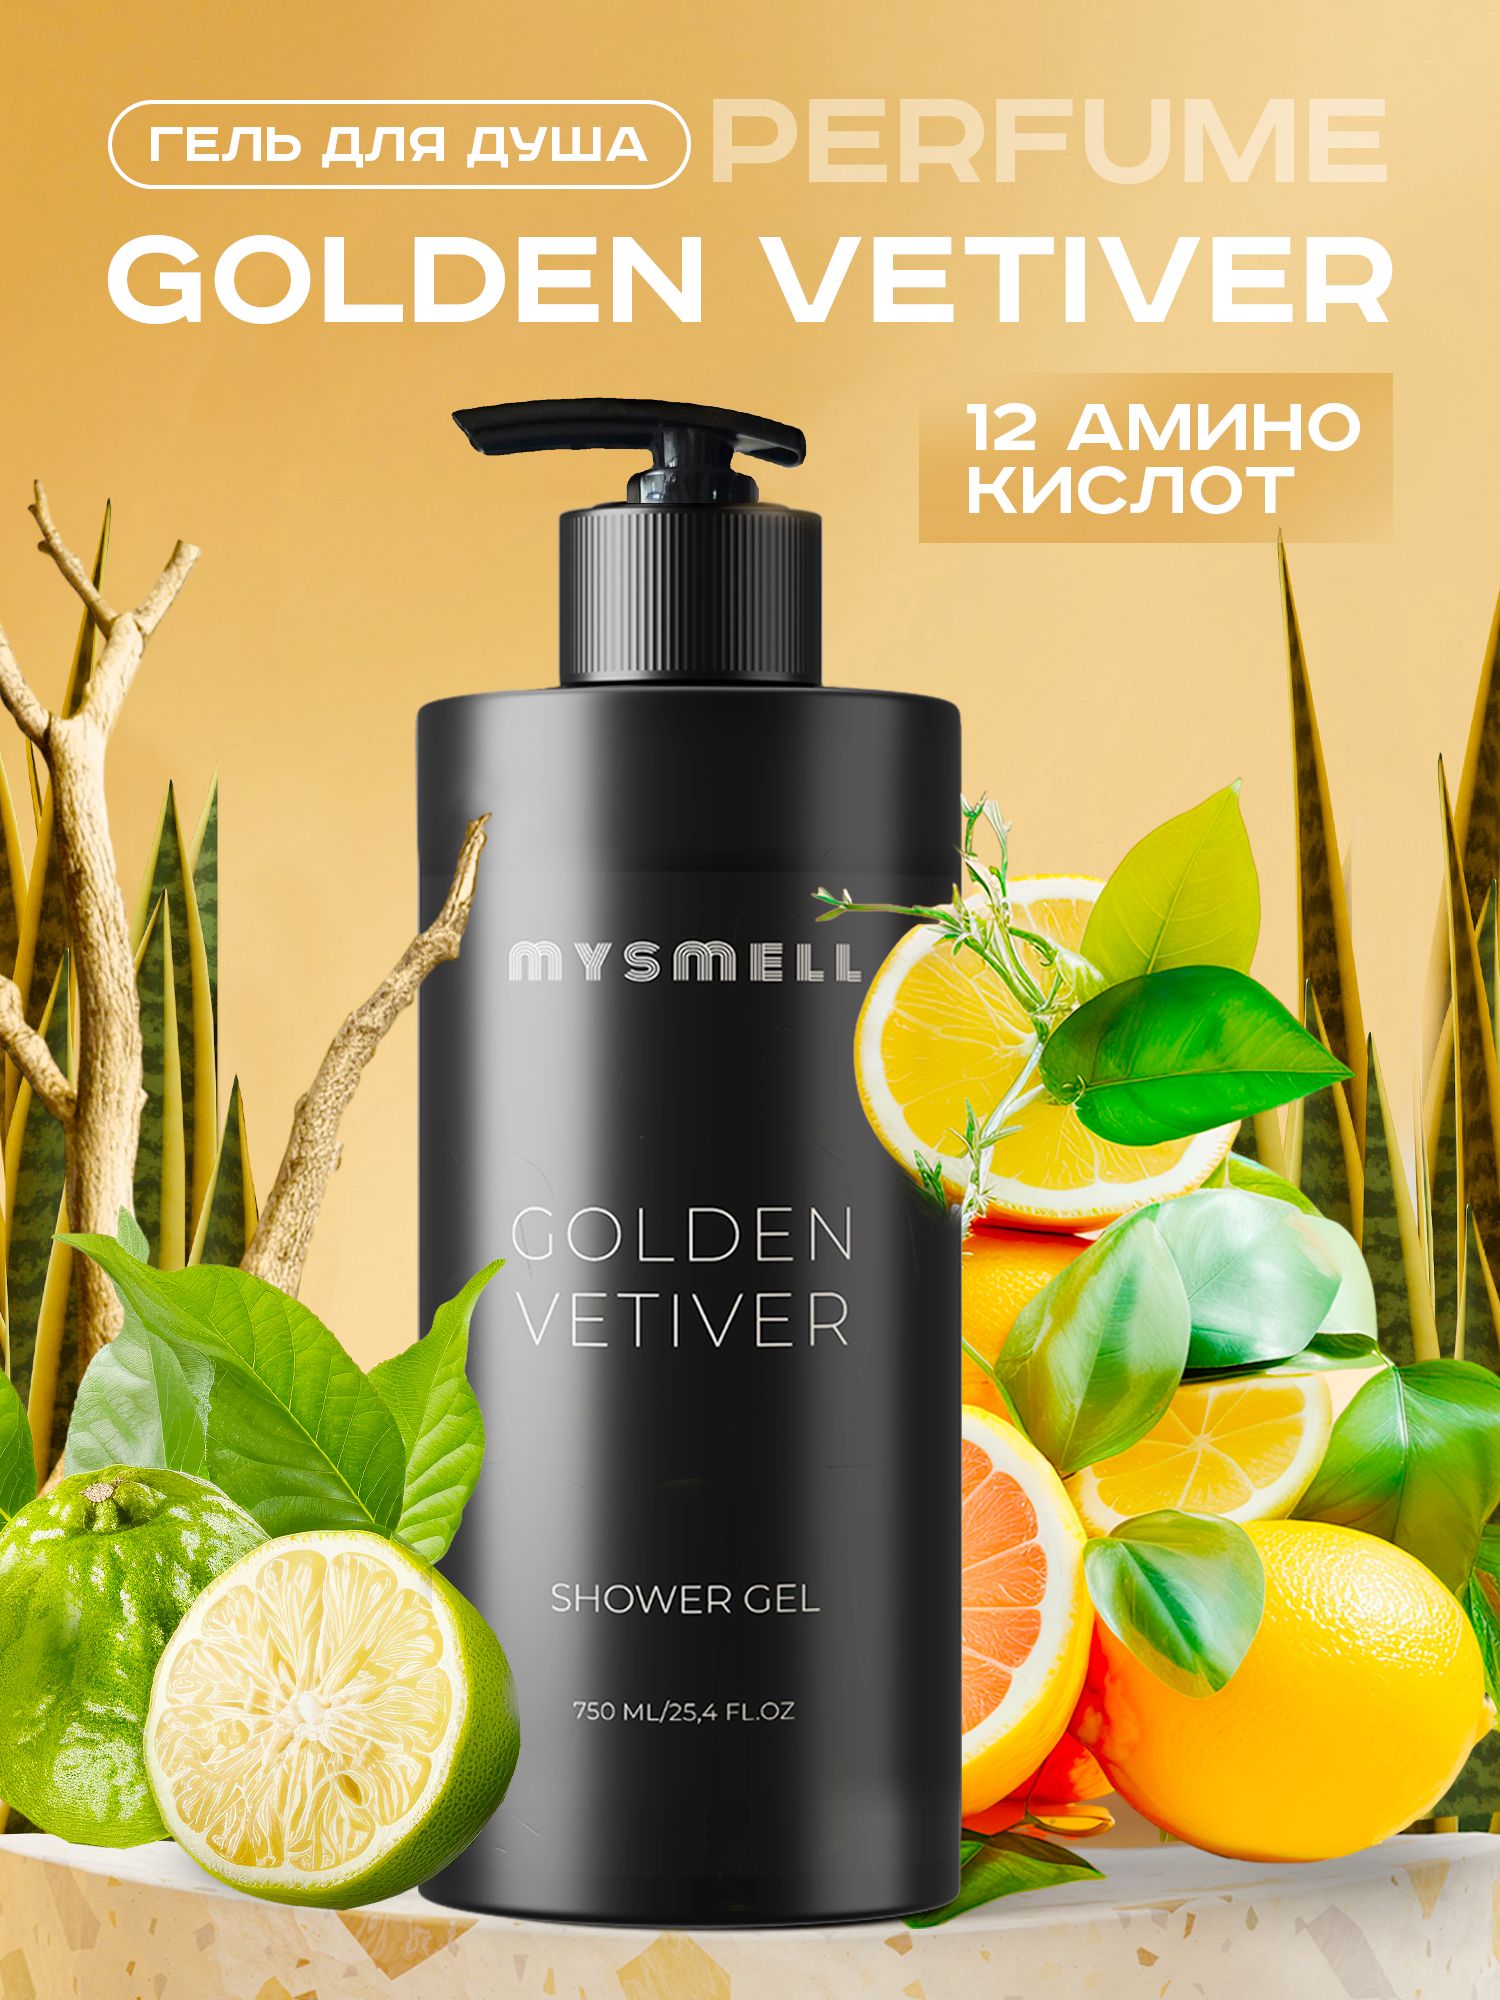 Гель Для Душа Mysmell Парфюмированный Golden Vetiver 750 Мл hg очиститель для душевой и ванной 500